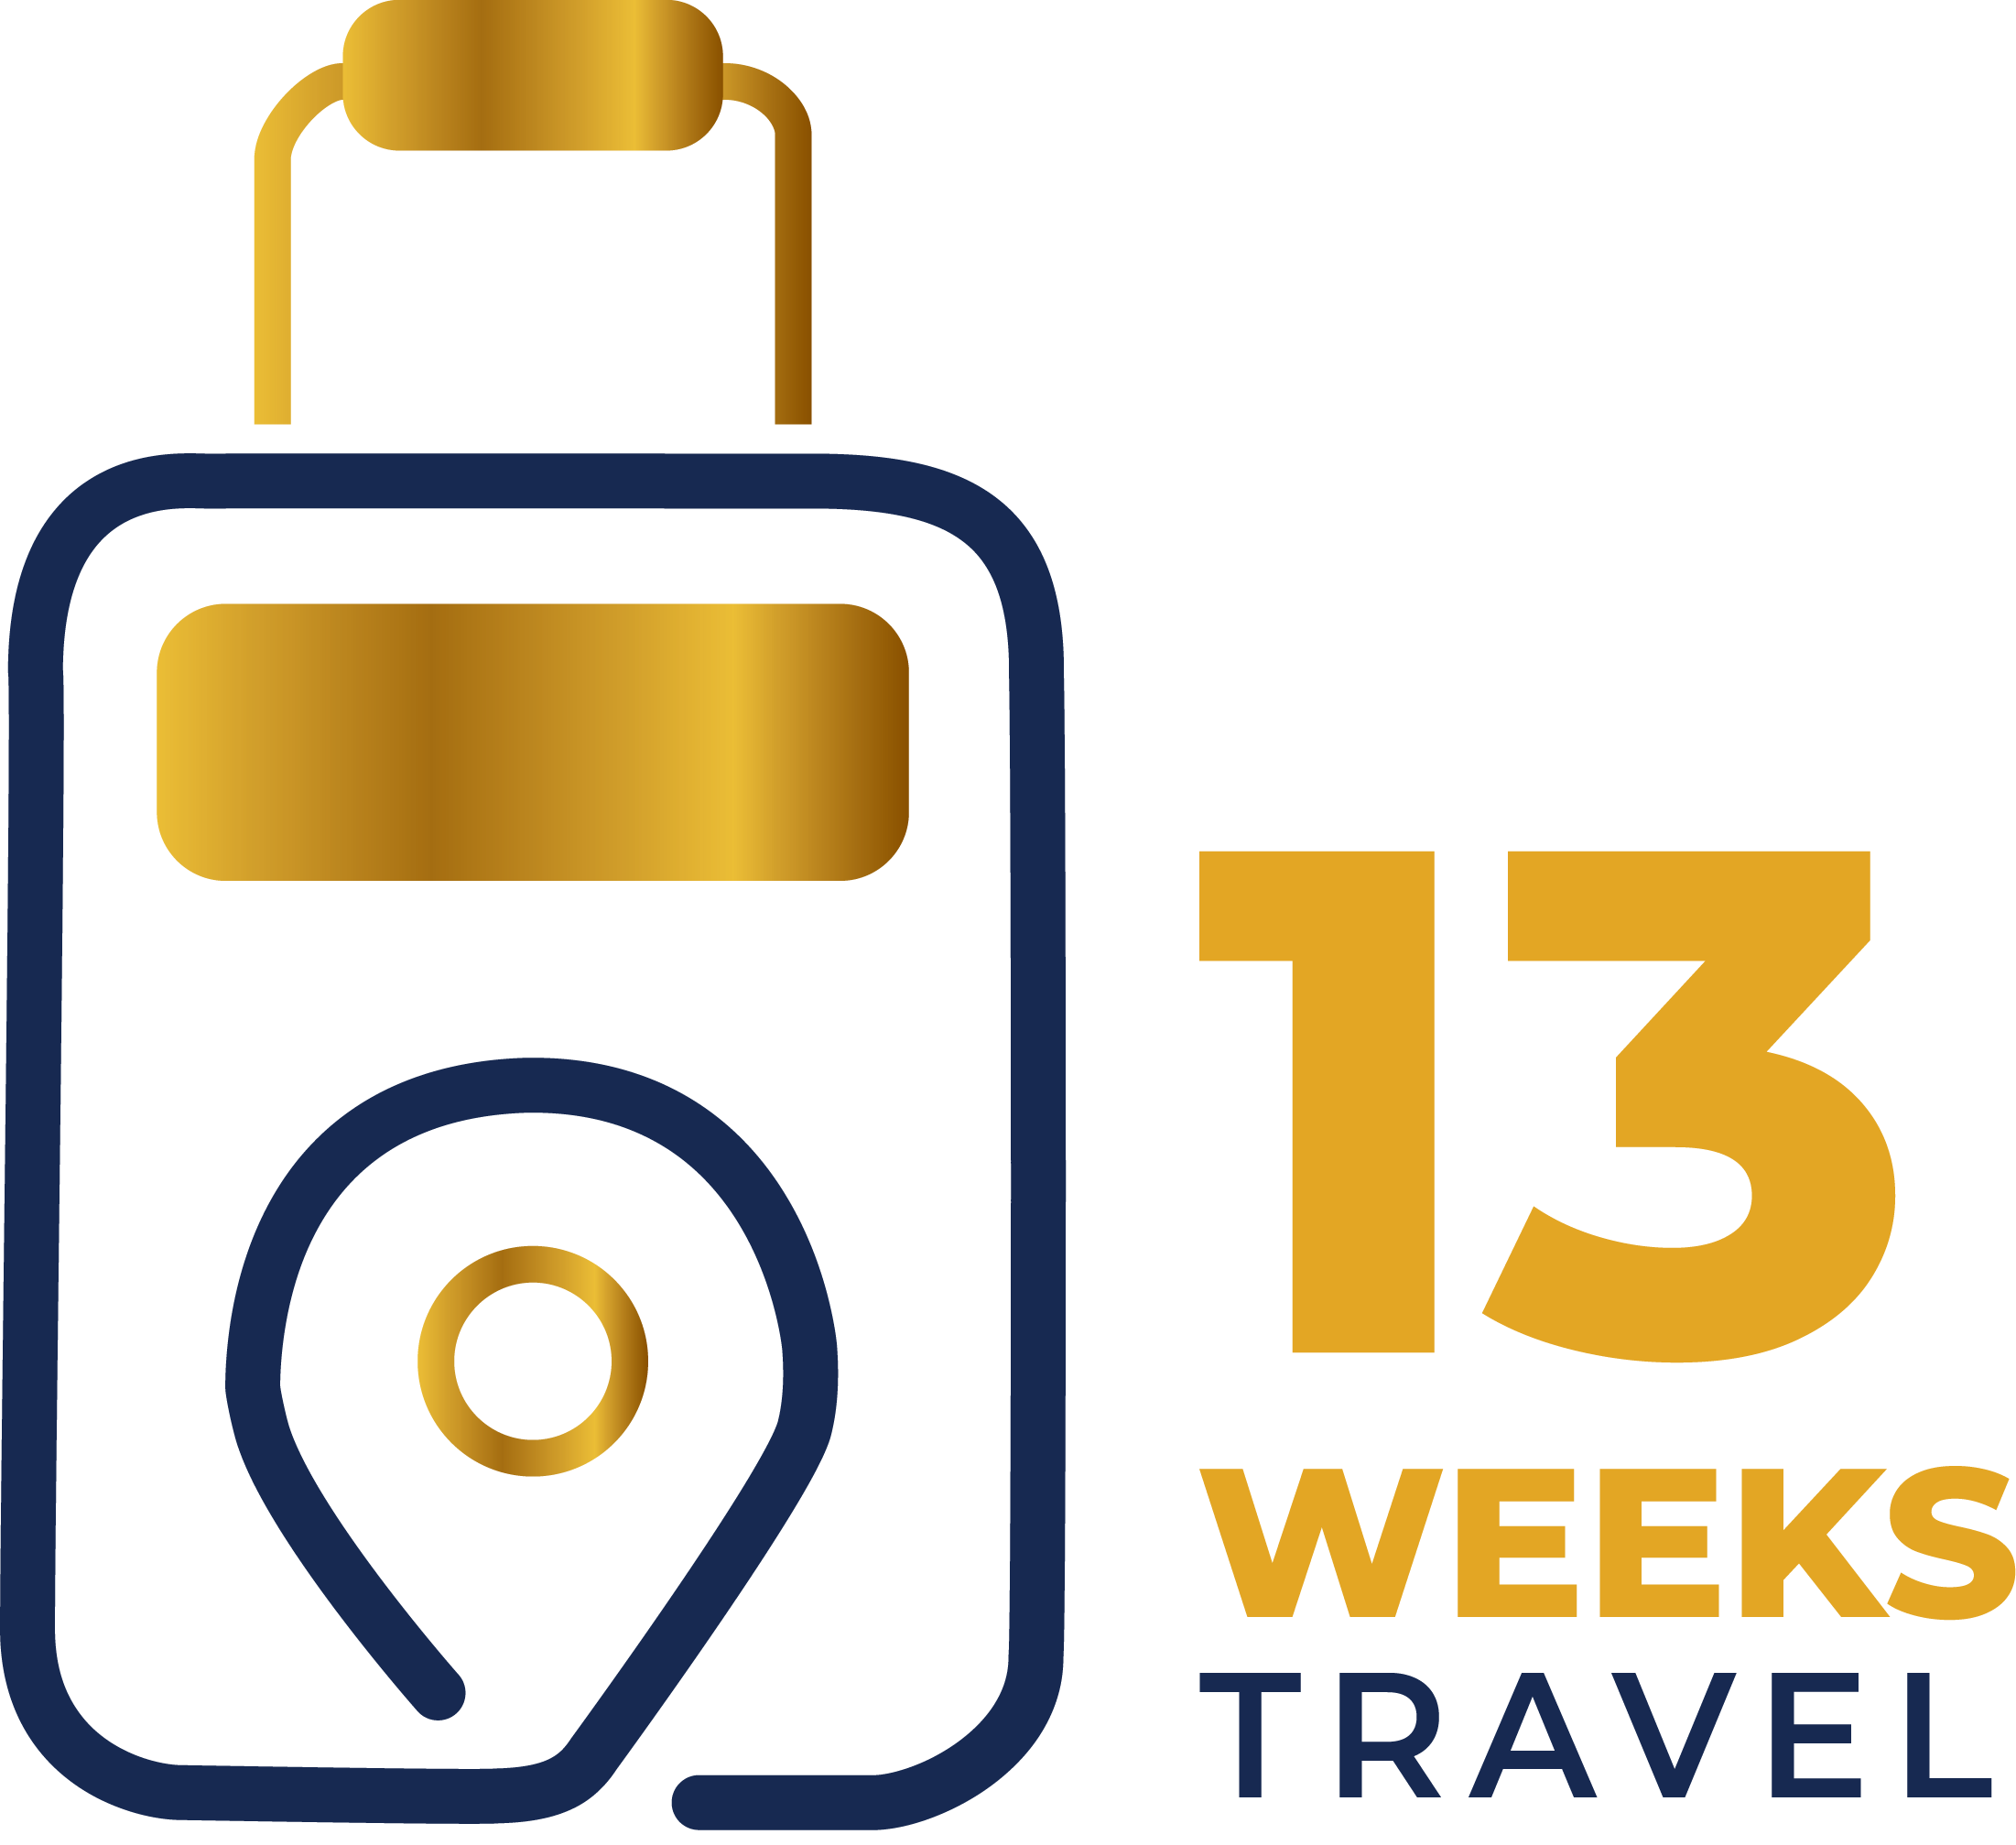 13 Weeks Travel